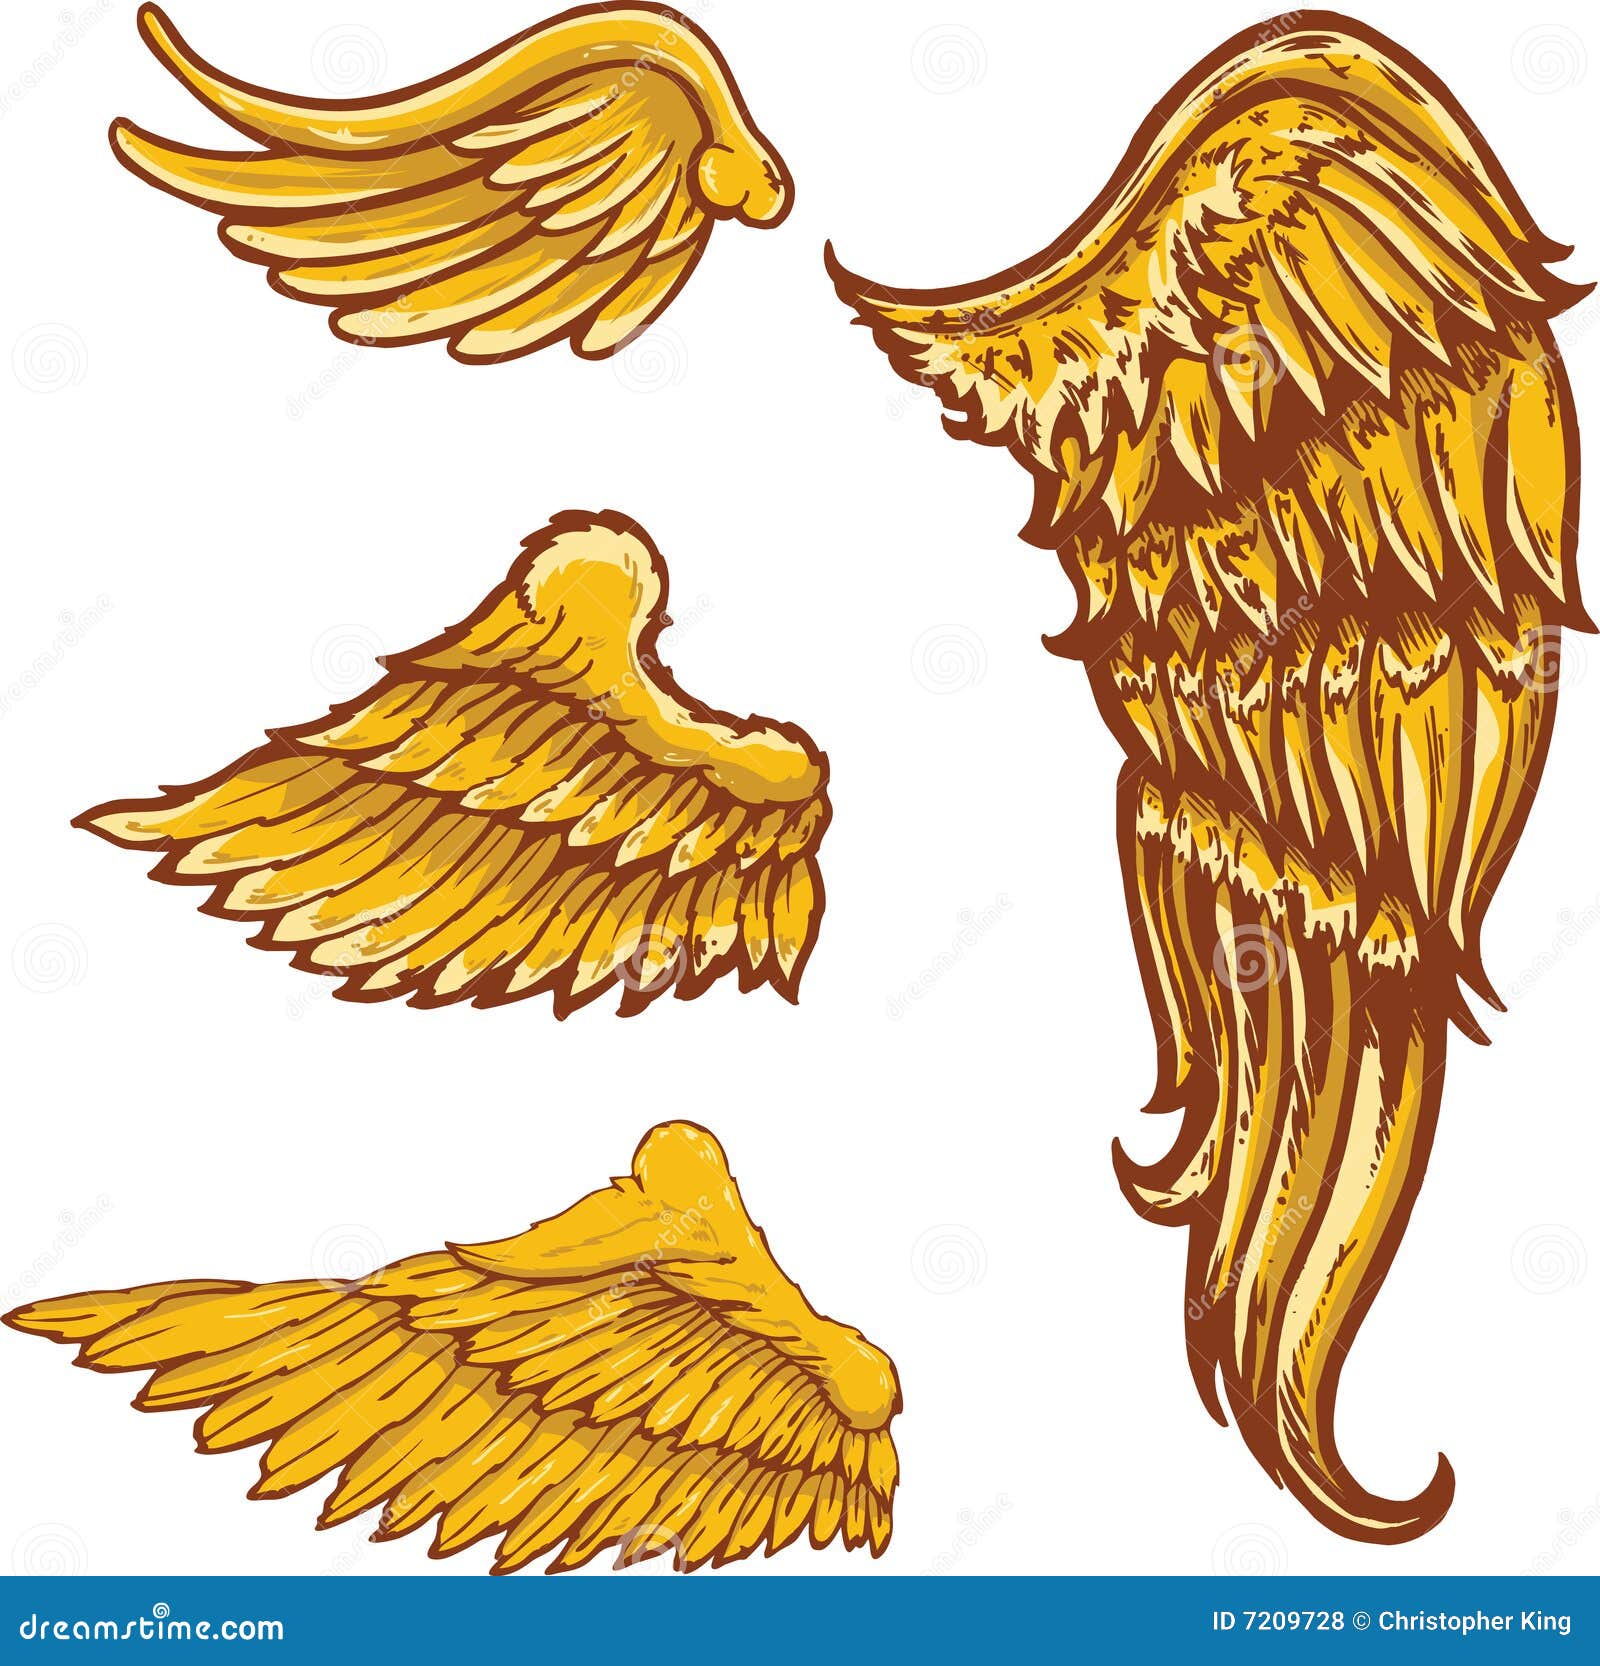 Lucifer wings #luciferwings | Lucifer wings, Tattoos, Fish tattoos